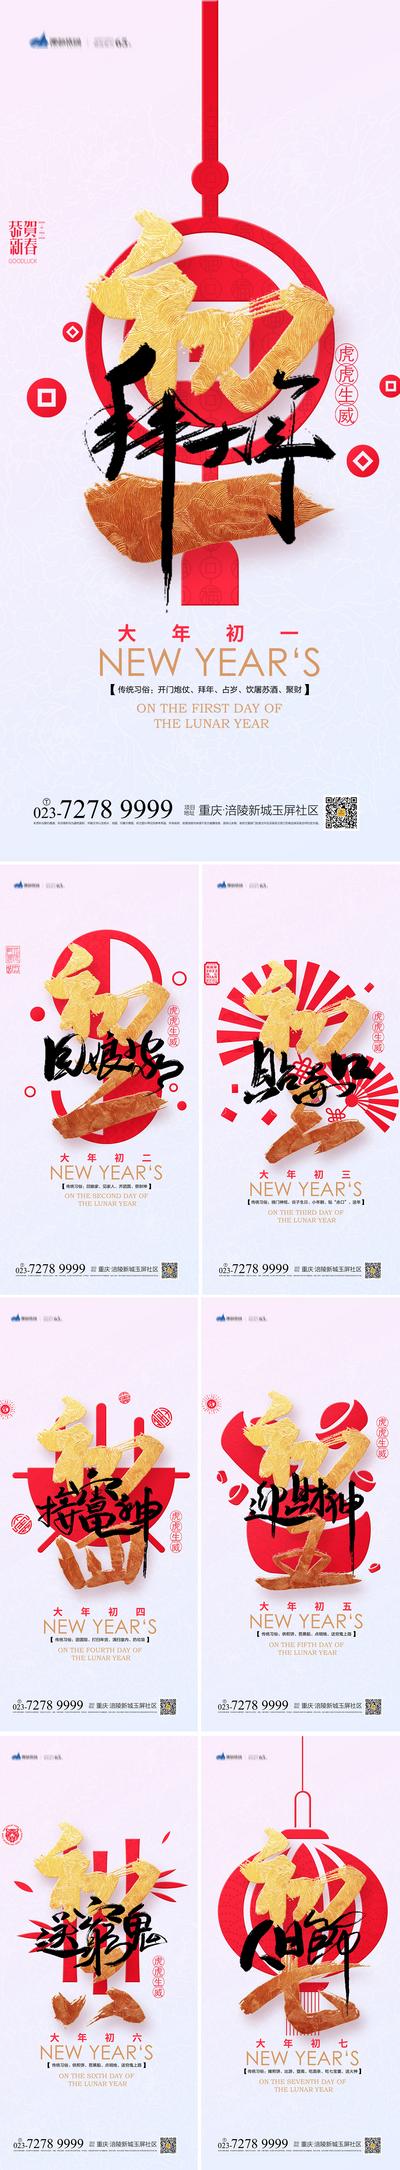 南门网 海报 地产 中国传统节日  新春  年俗  初一 初七 除夕  简约 